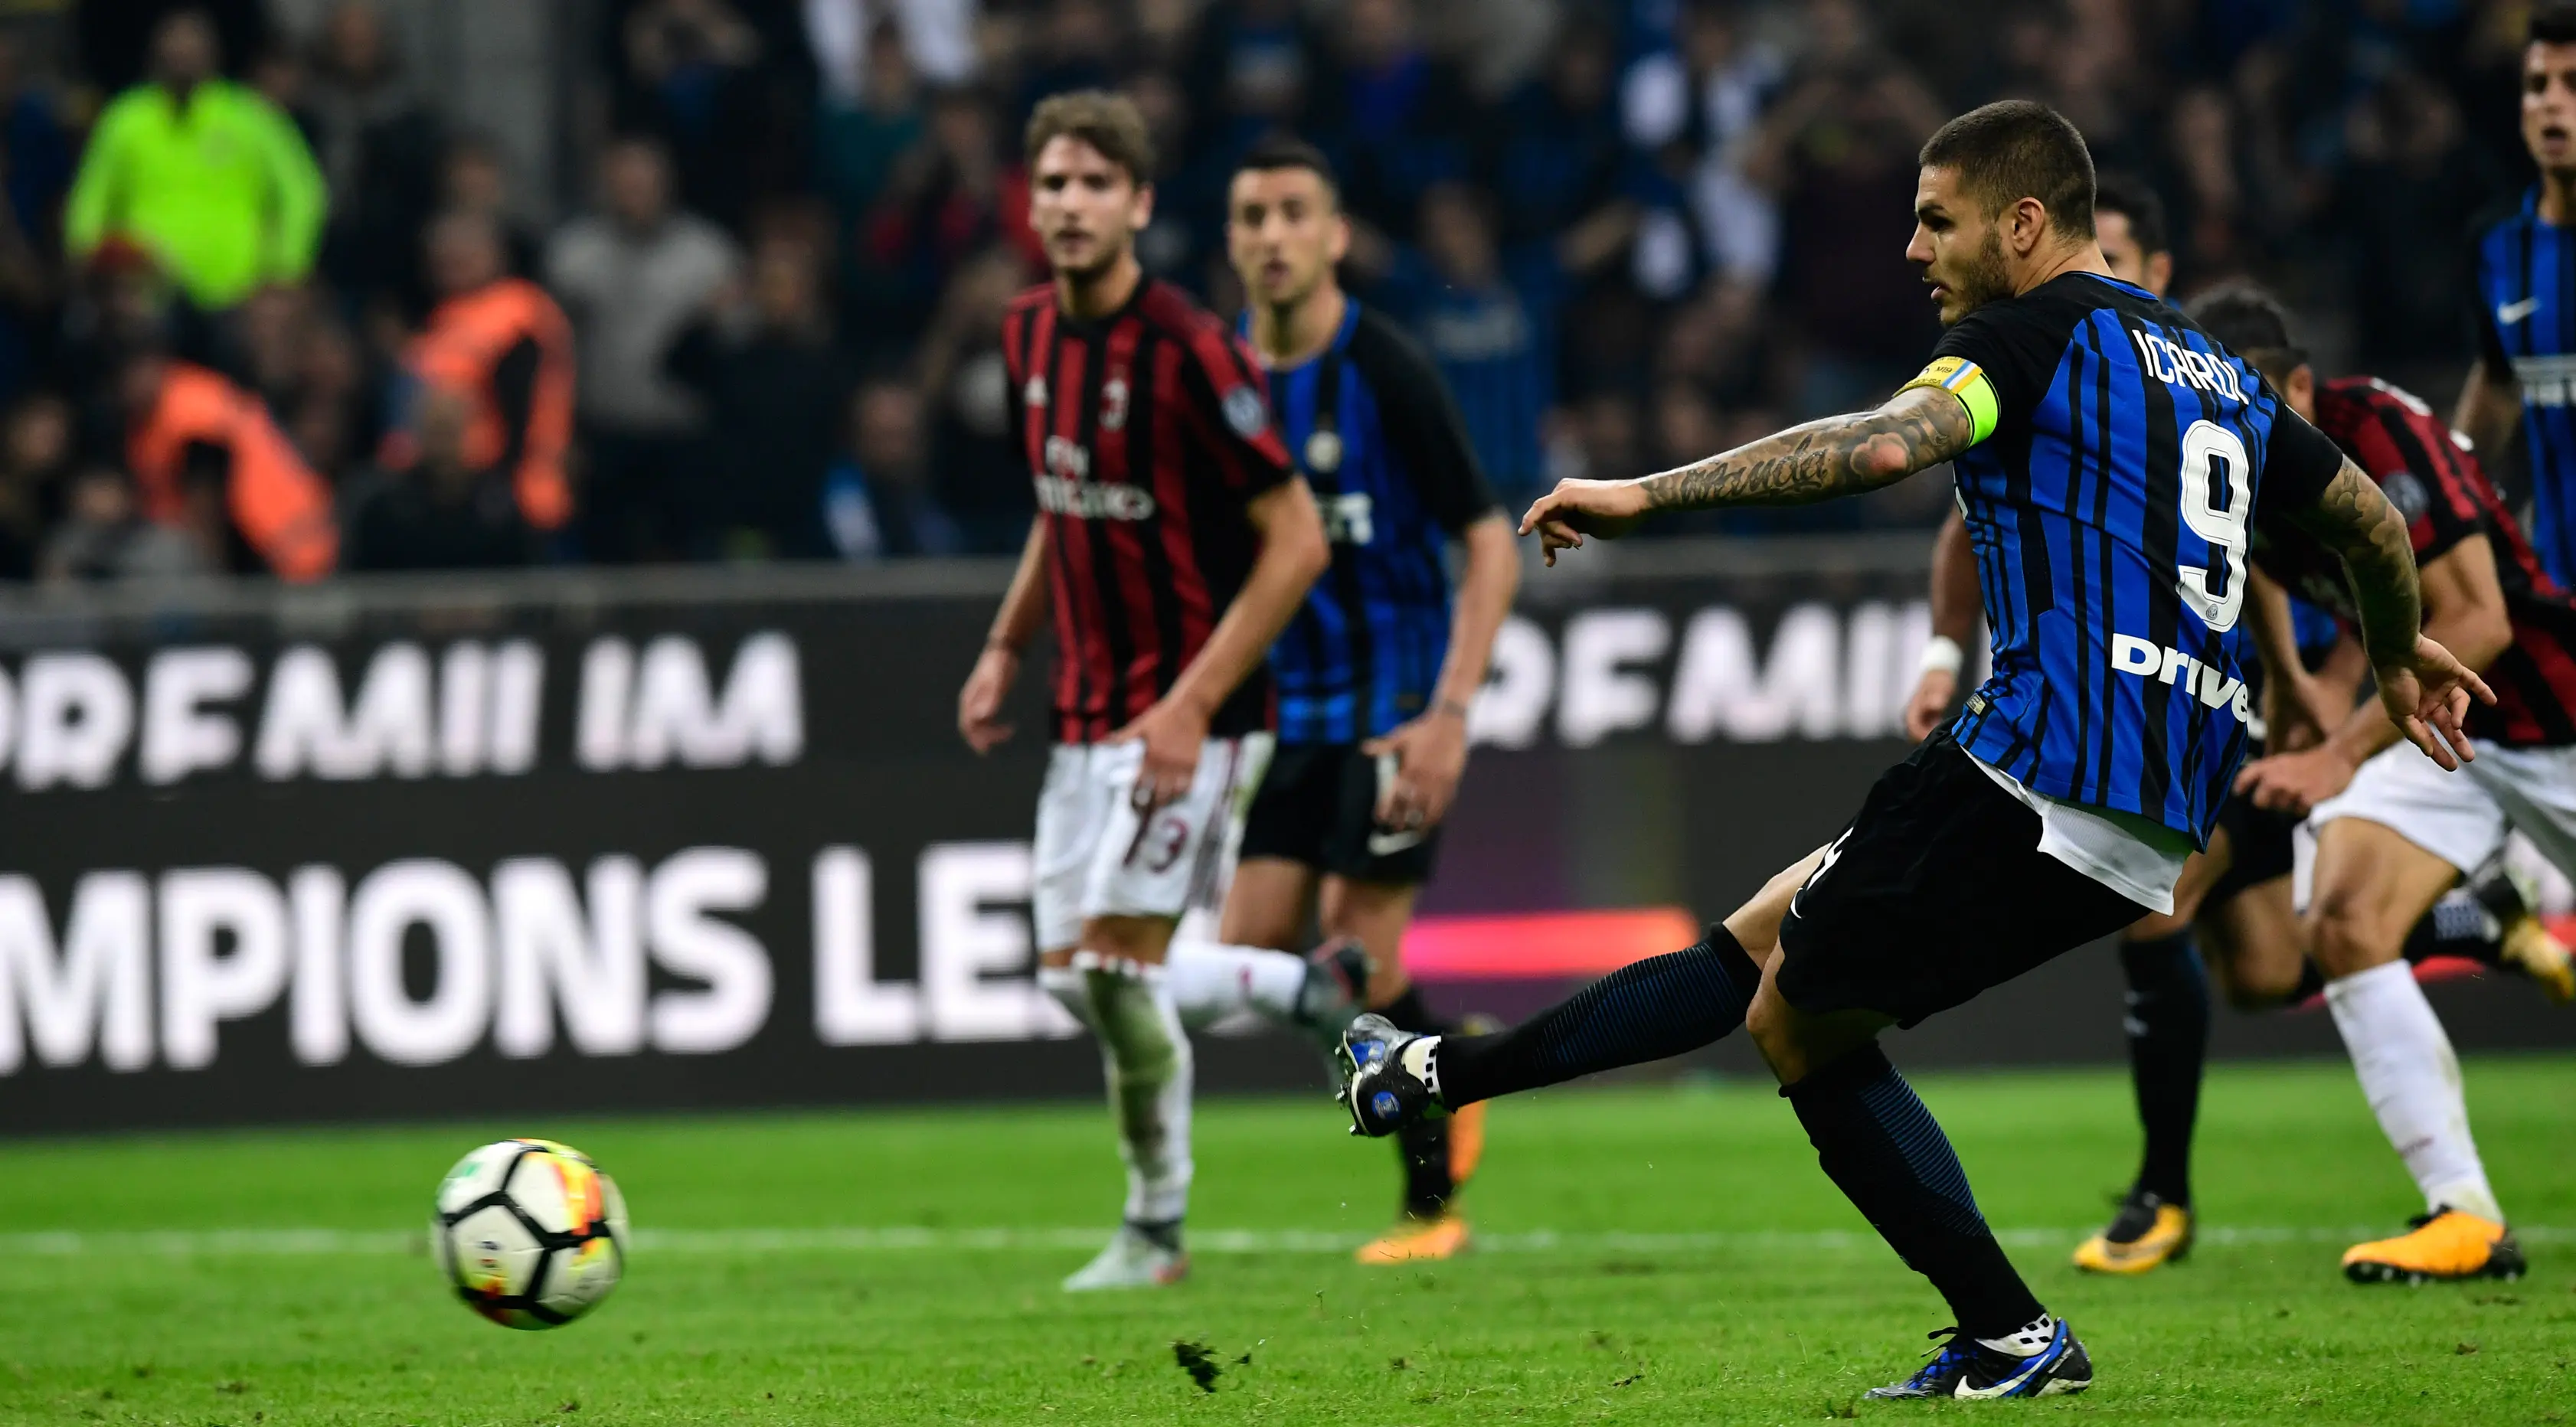 Pemain Inter Milan, Mauro Icardi mencetak gol melalui titik putih ke gawang AC Milan pada pekan kedelapan Liga Italia di Stadion Giuseppe Meazza, Minggu (15/10). Gol Inter Milan diborong oleh Icardi, 3-2. (MIGUEL MEDINA / AFP)